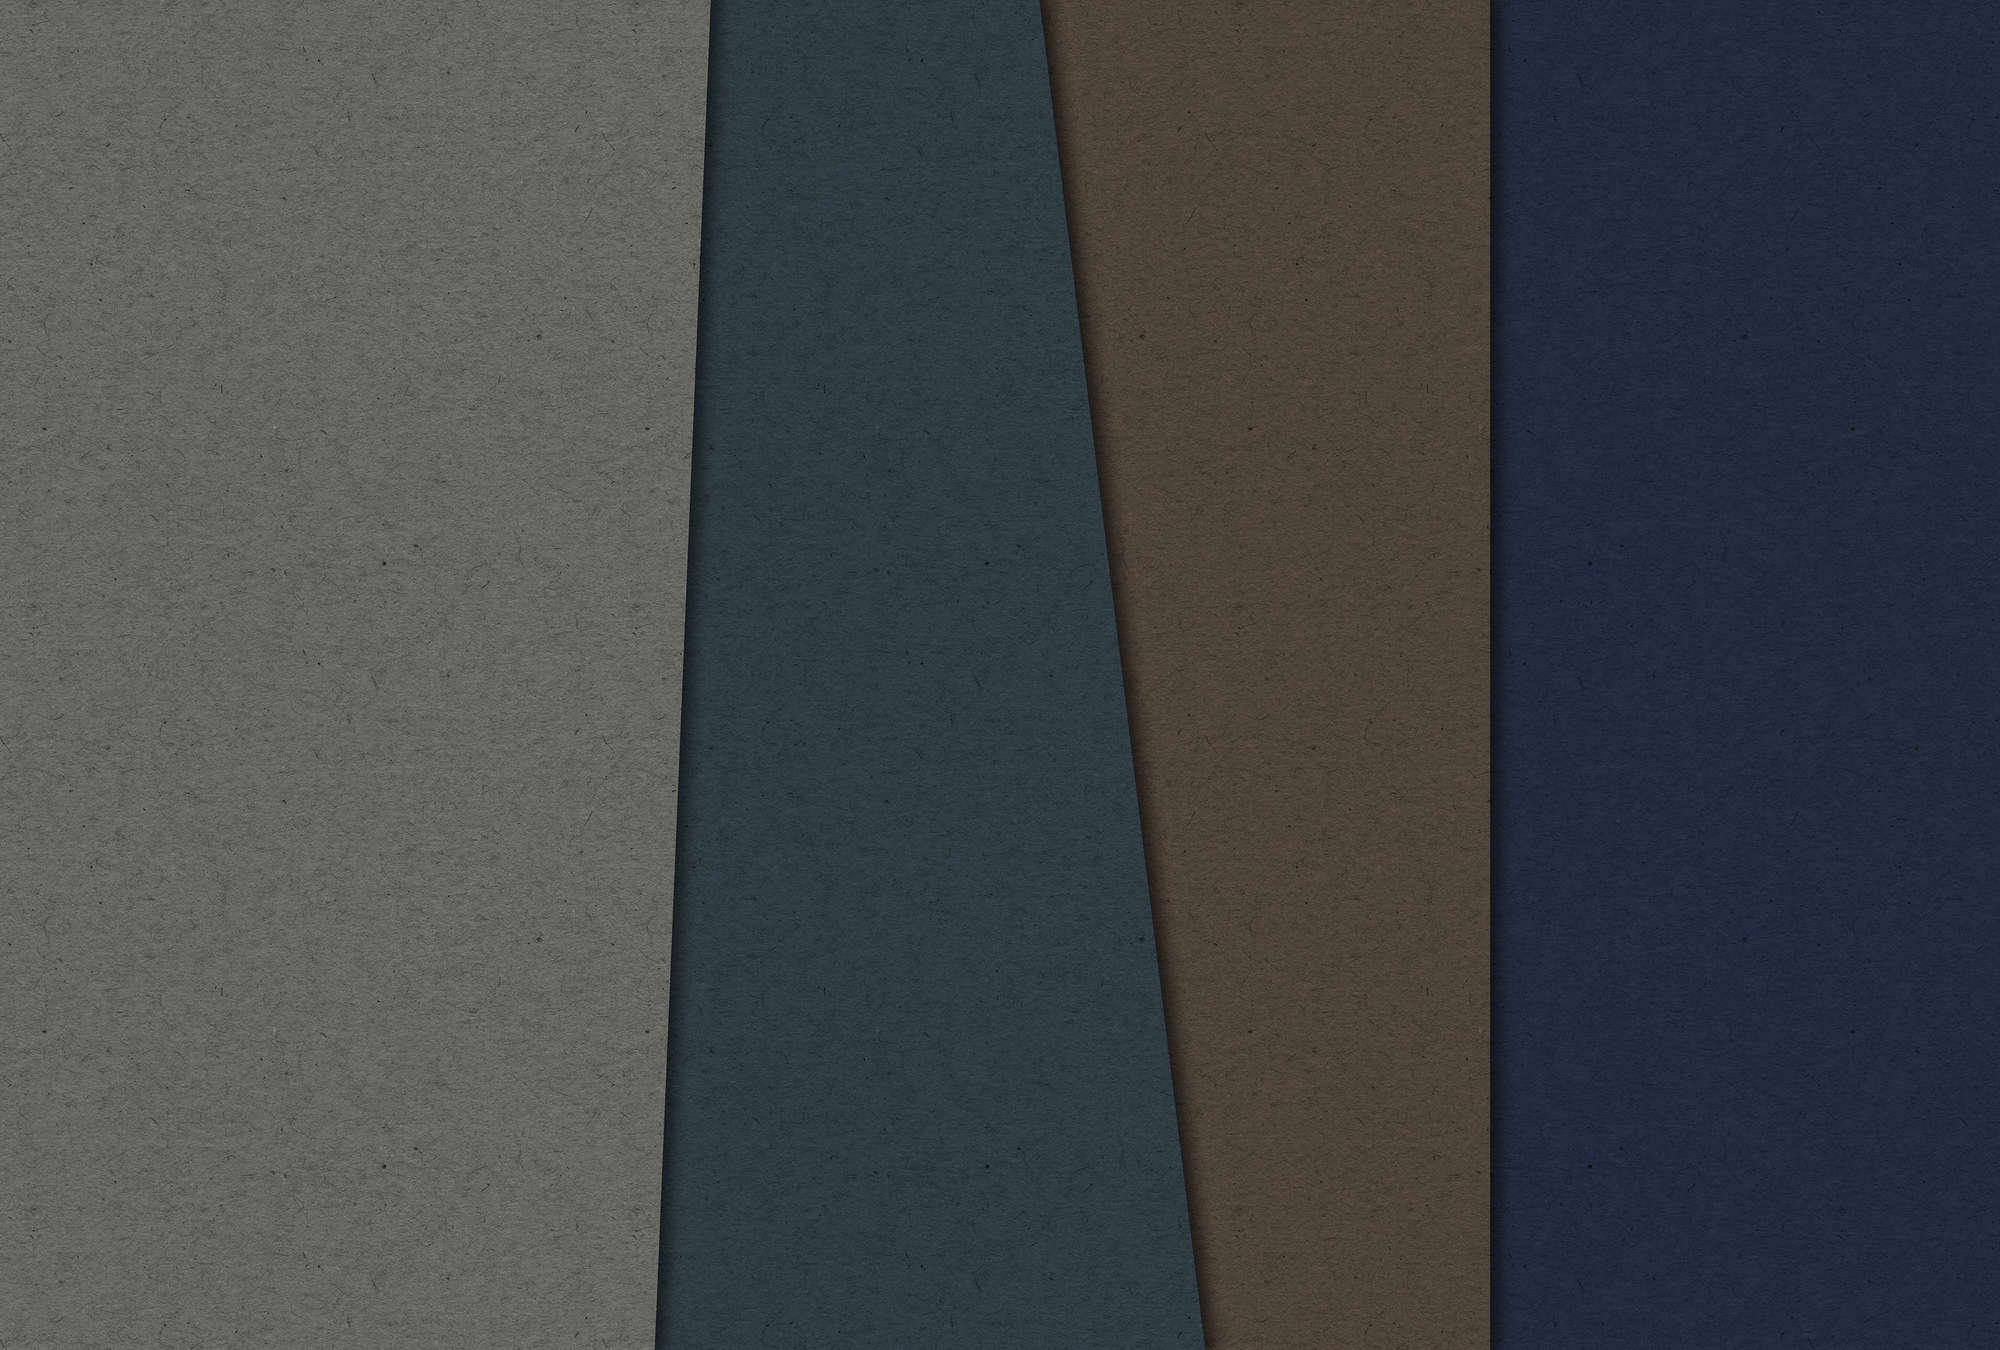             Layered Cardboard 2 - Papel pintado fotográfico en estructura de cartón con campos de color oscuro - Azul, Marrón | Perla vellón liso
        